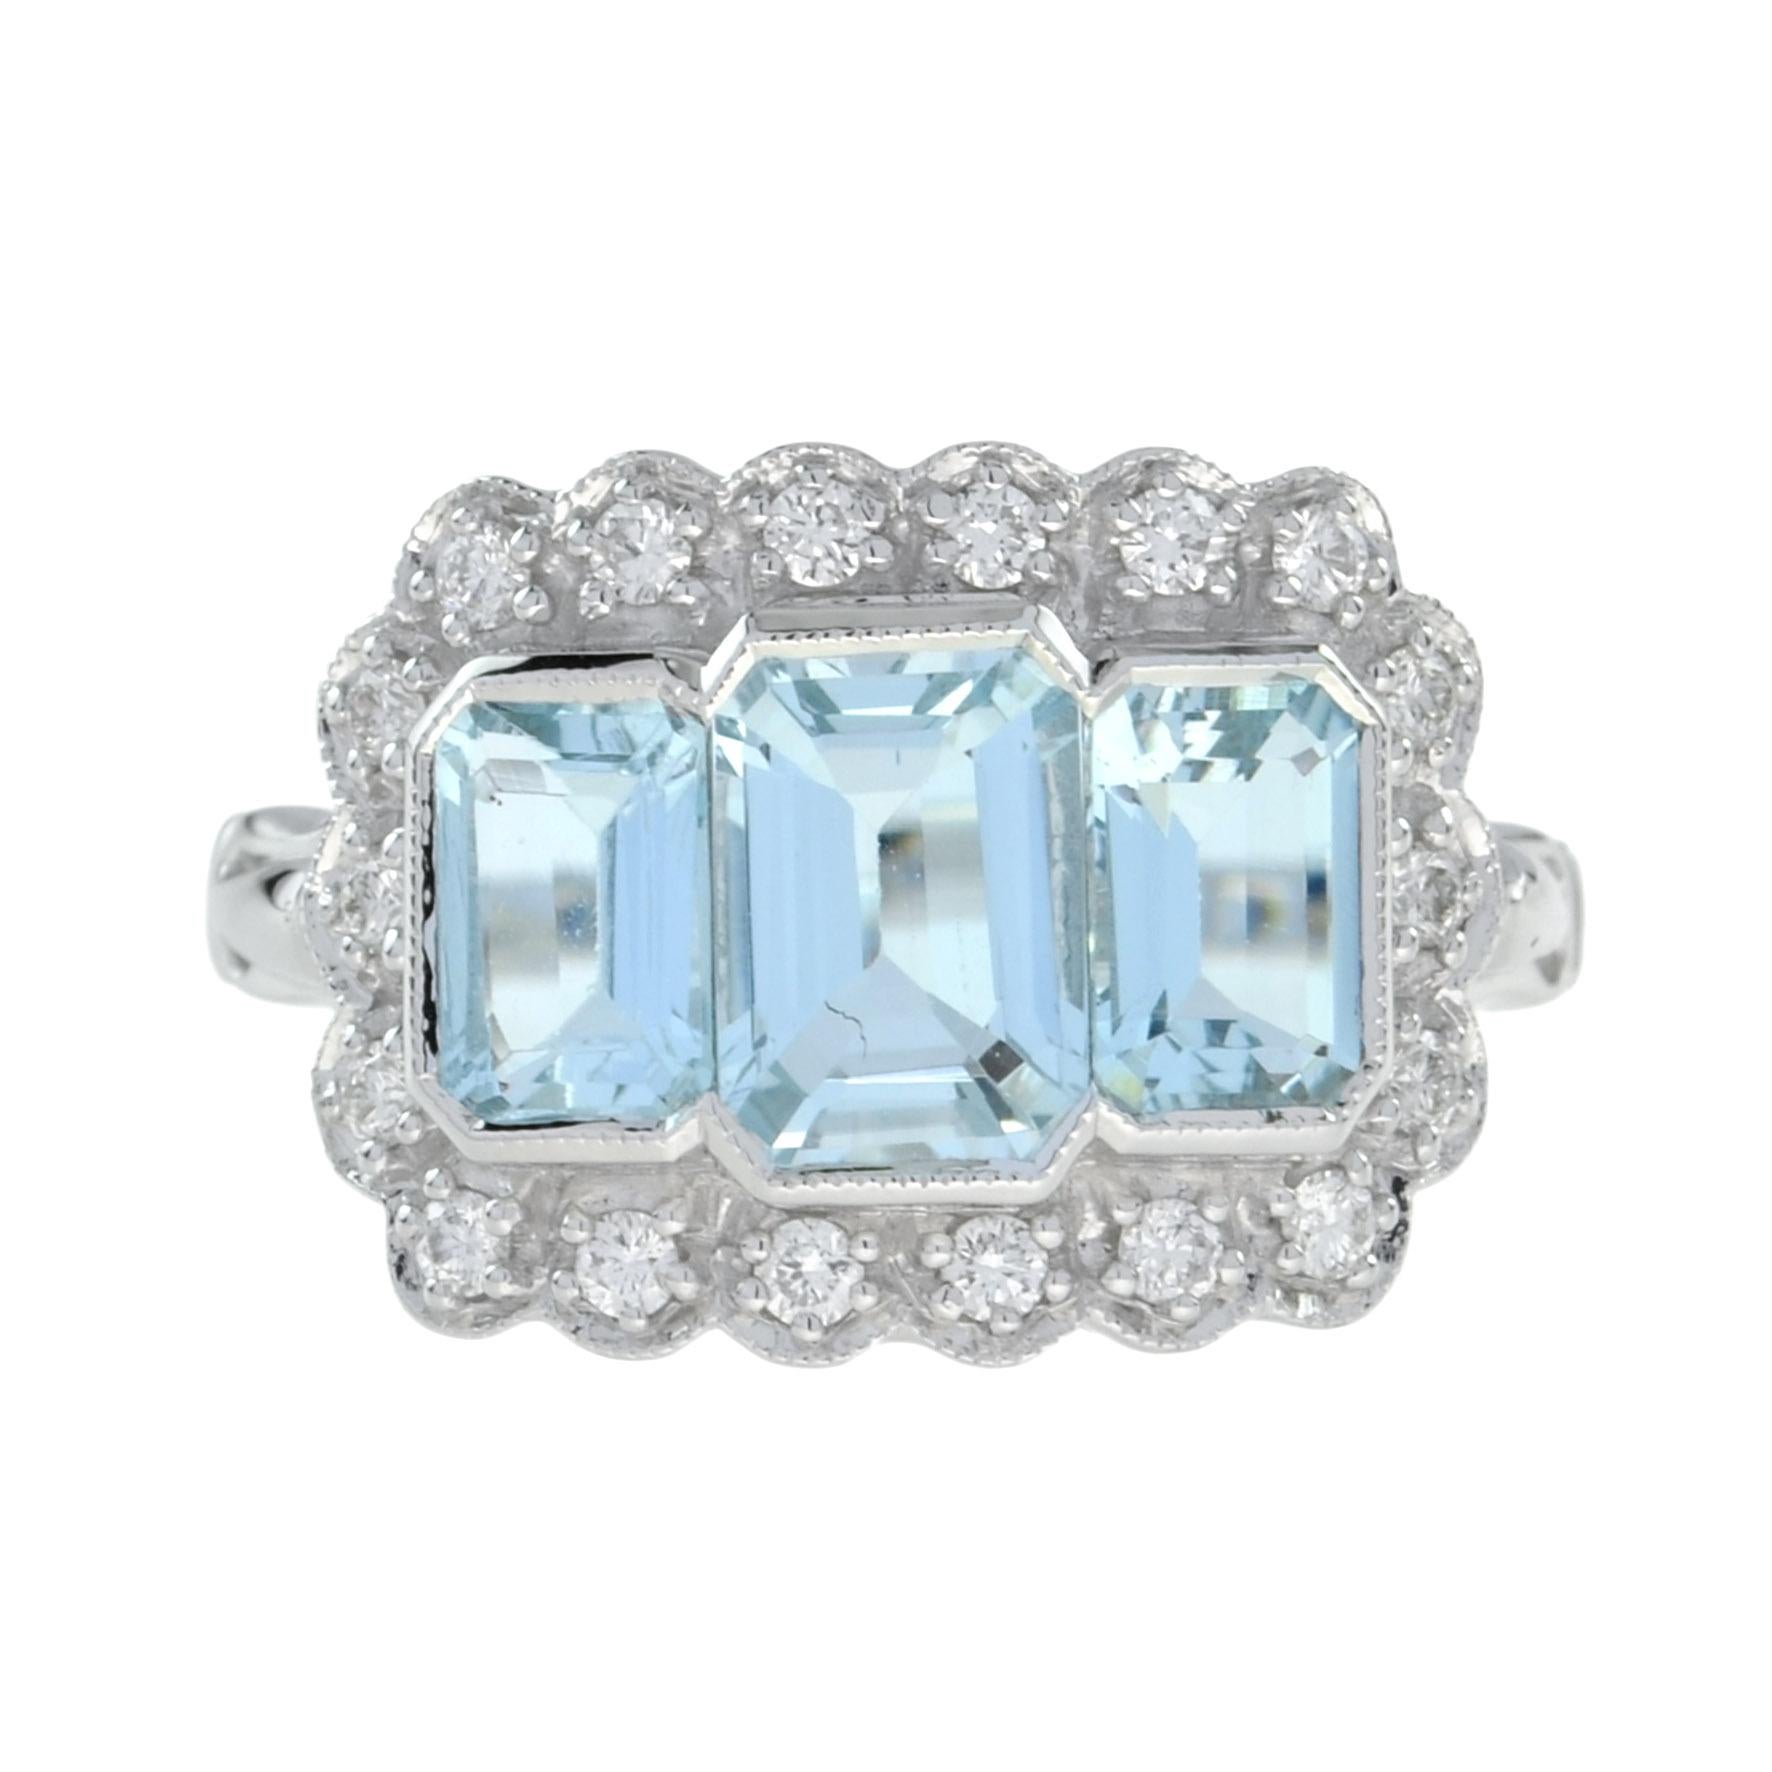 For Sale:  Emerald Cut Aquamarine and Diamond Three Stone Ring in Platinum950 2